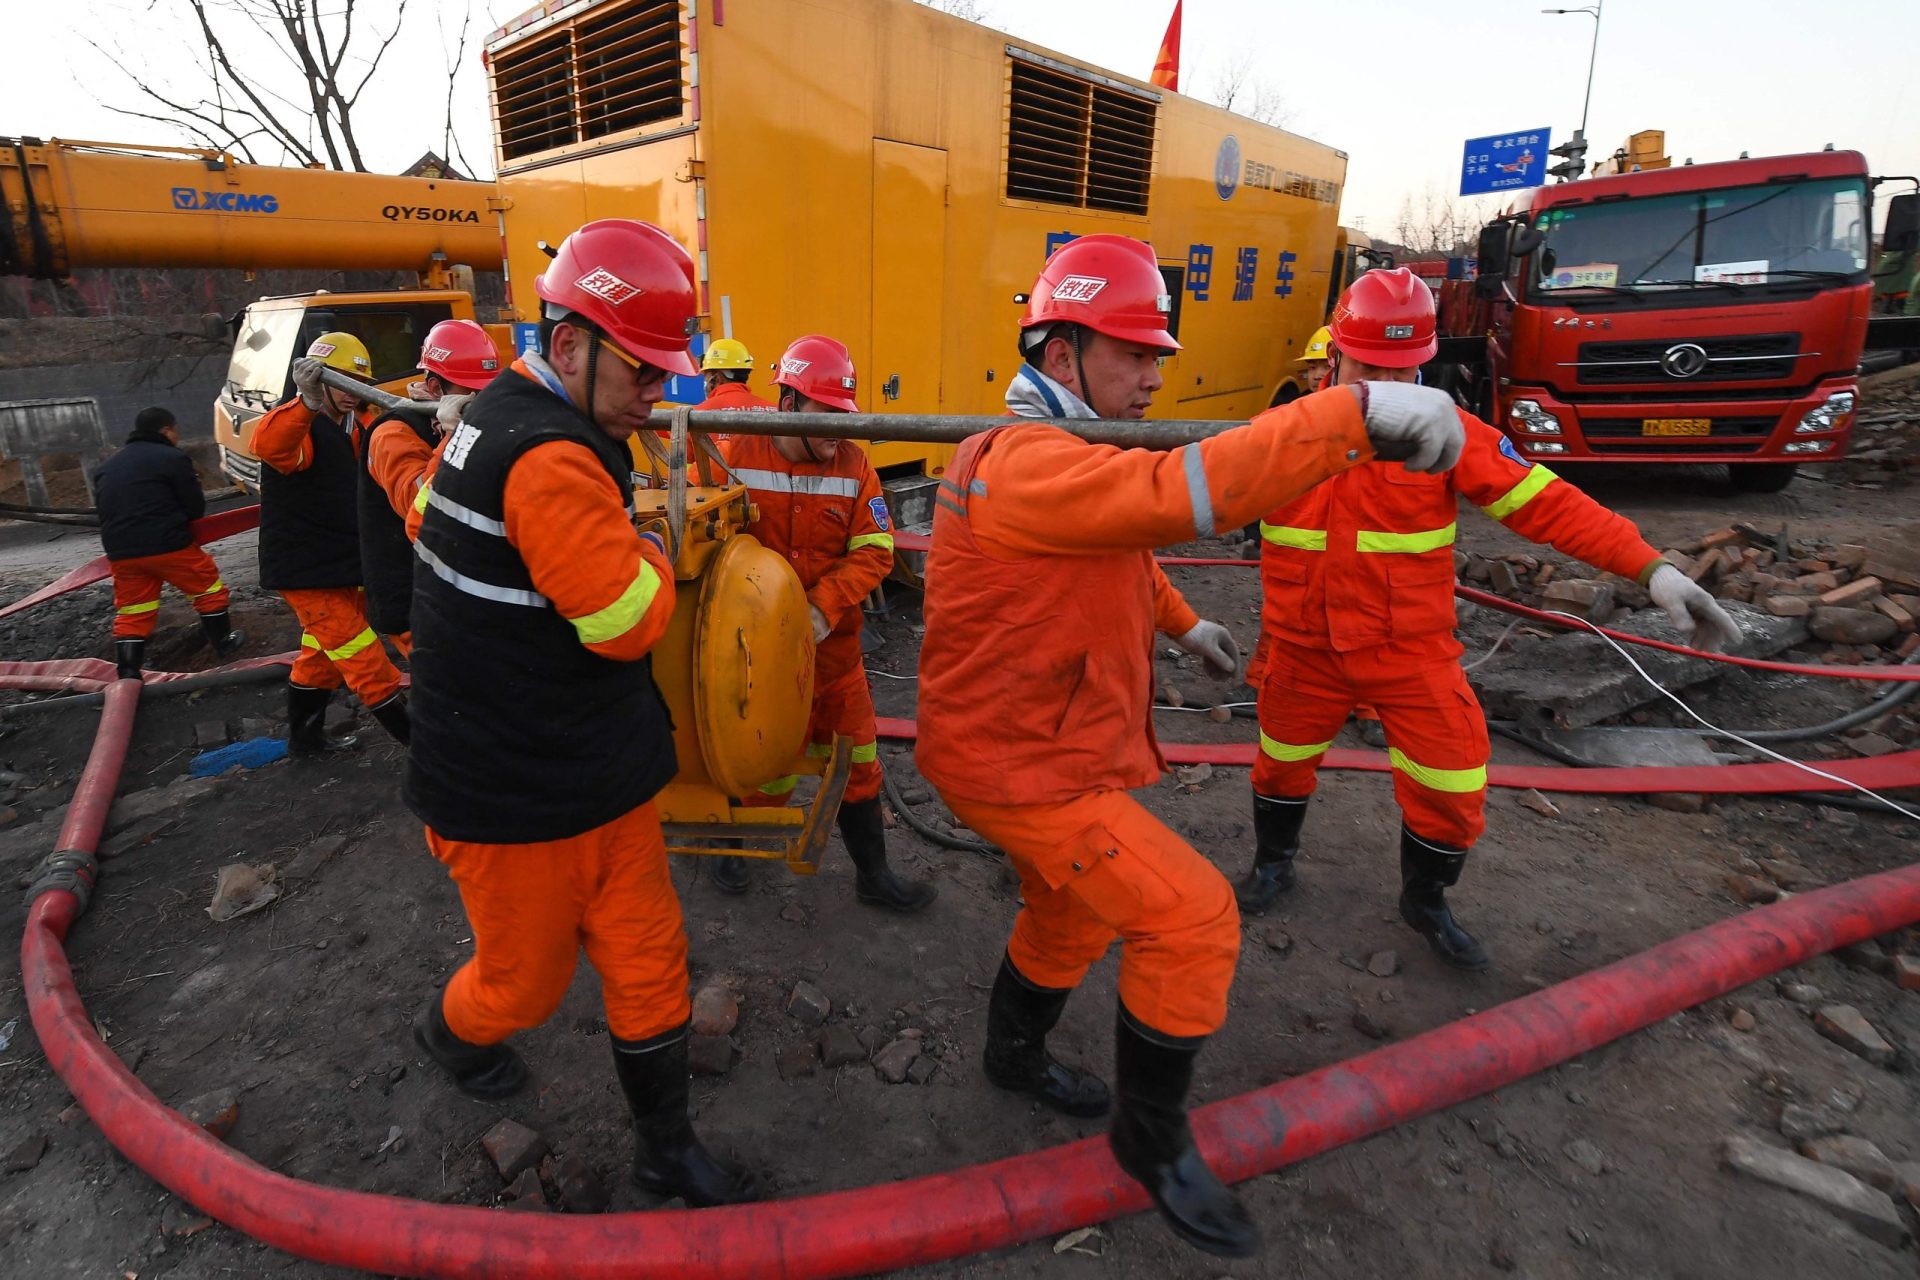 20 trabalhadores resgatados de uma mina onde estavam presos na China